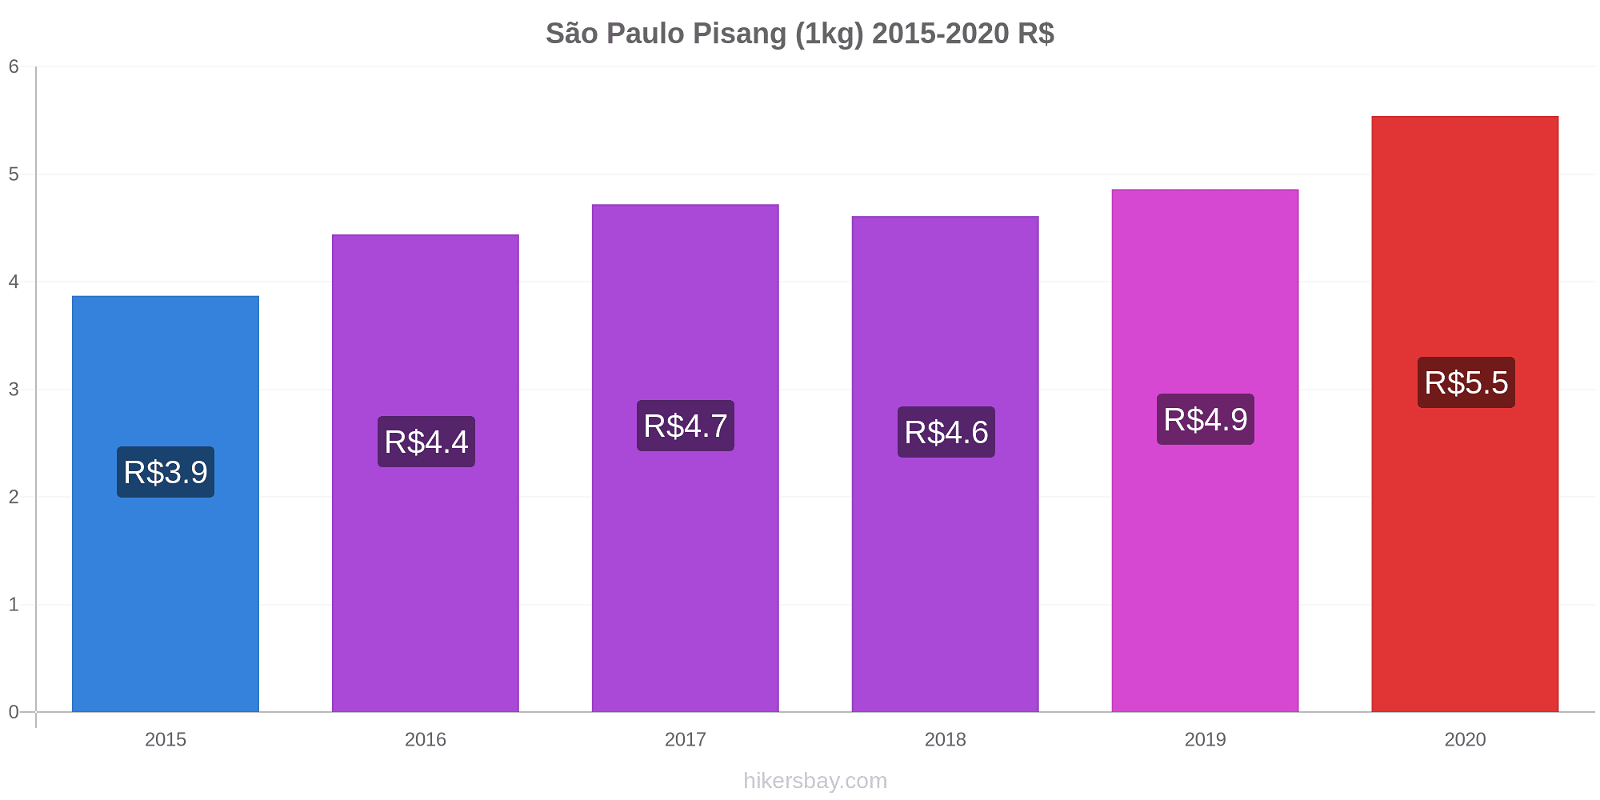 São Paulo perubahan harga Pisang (1kg) hikersbay.com